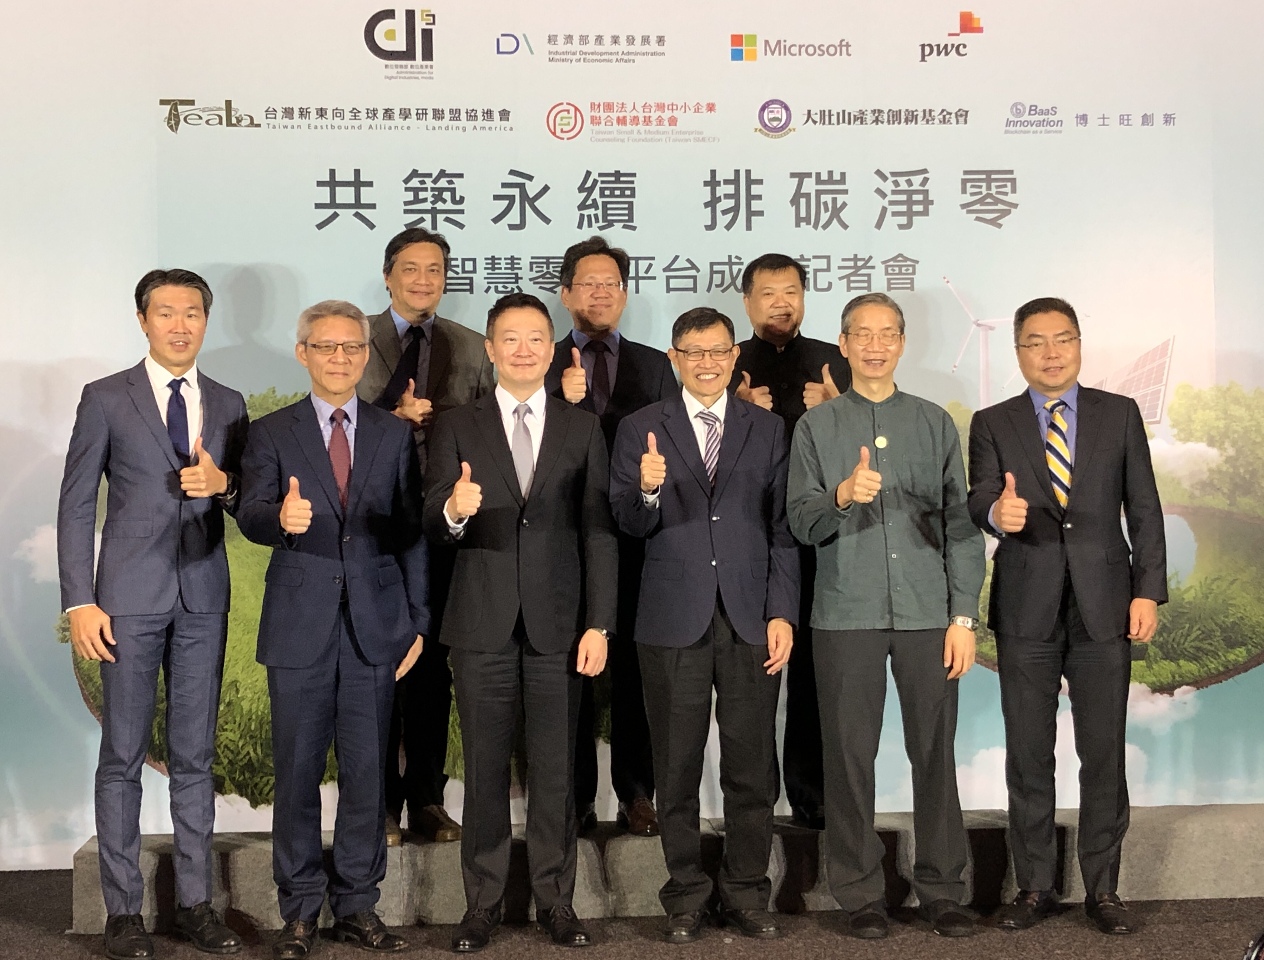 降低中小企業減碳難度 台灣微軟成立智慧零碳平台